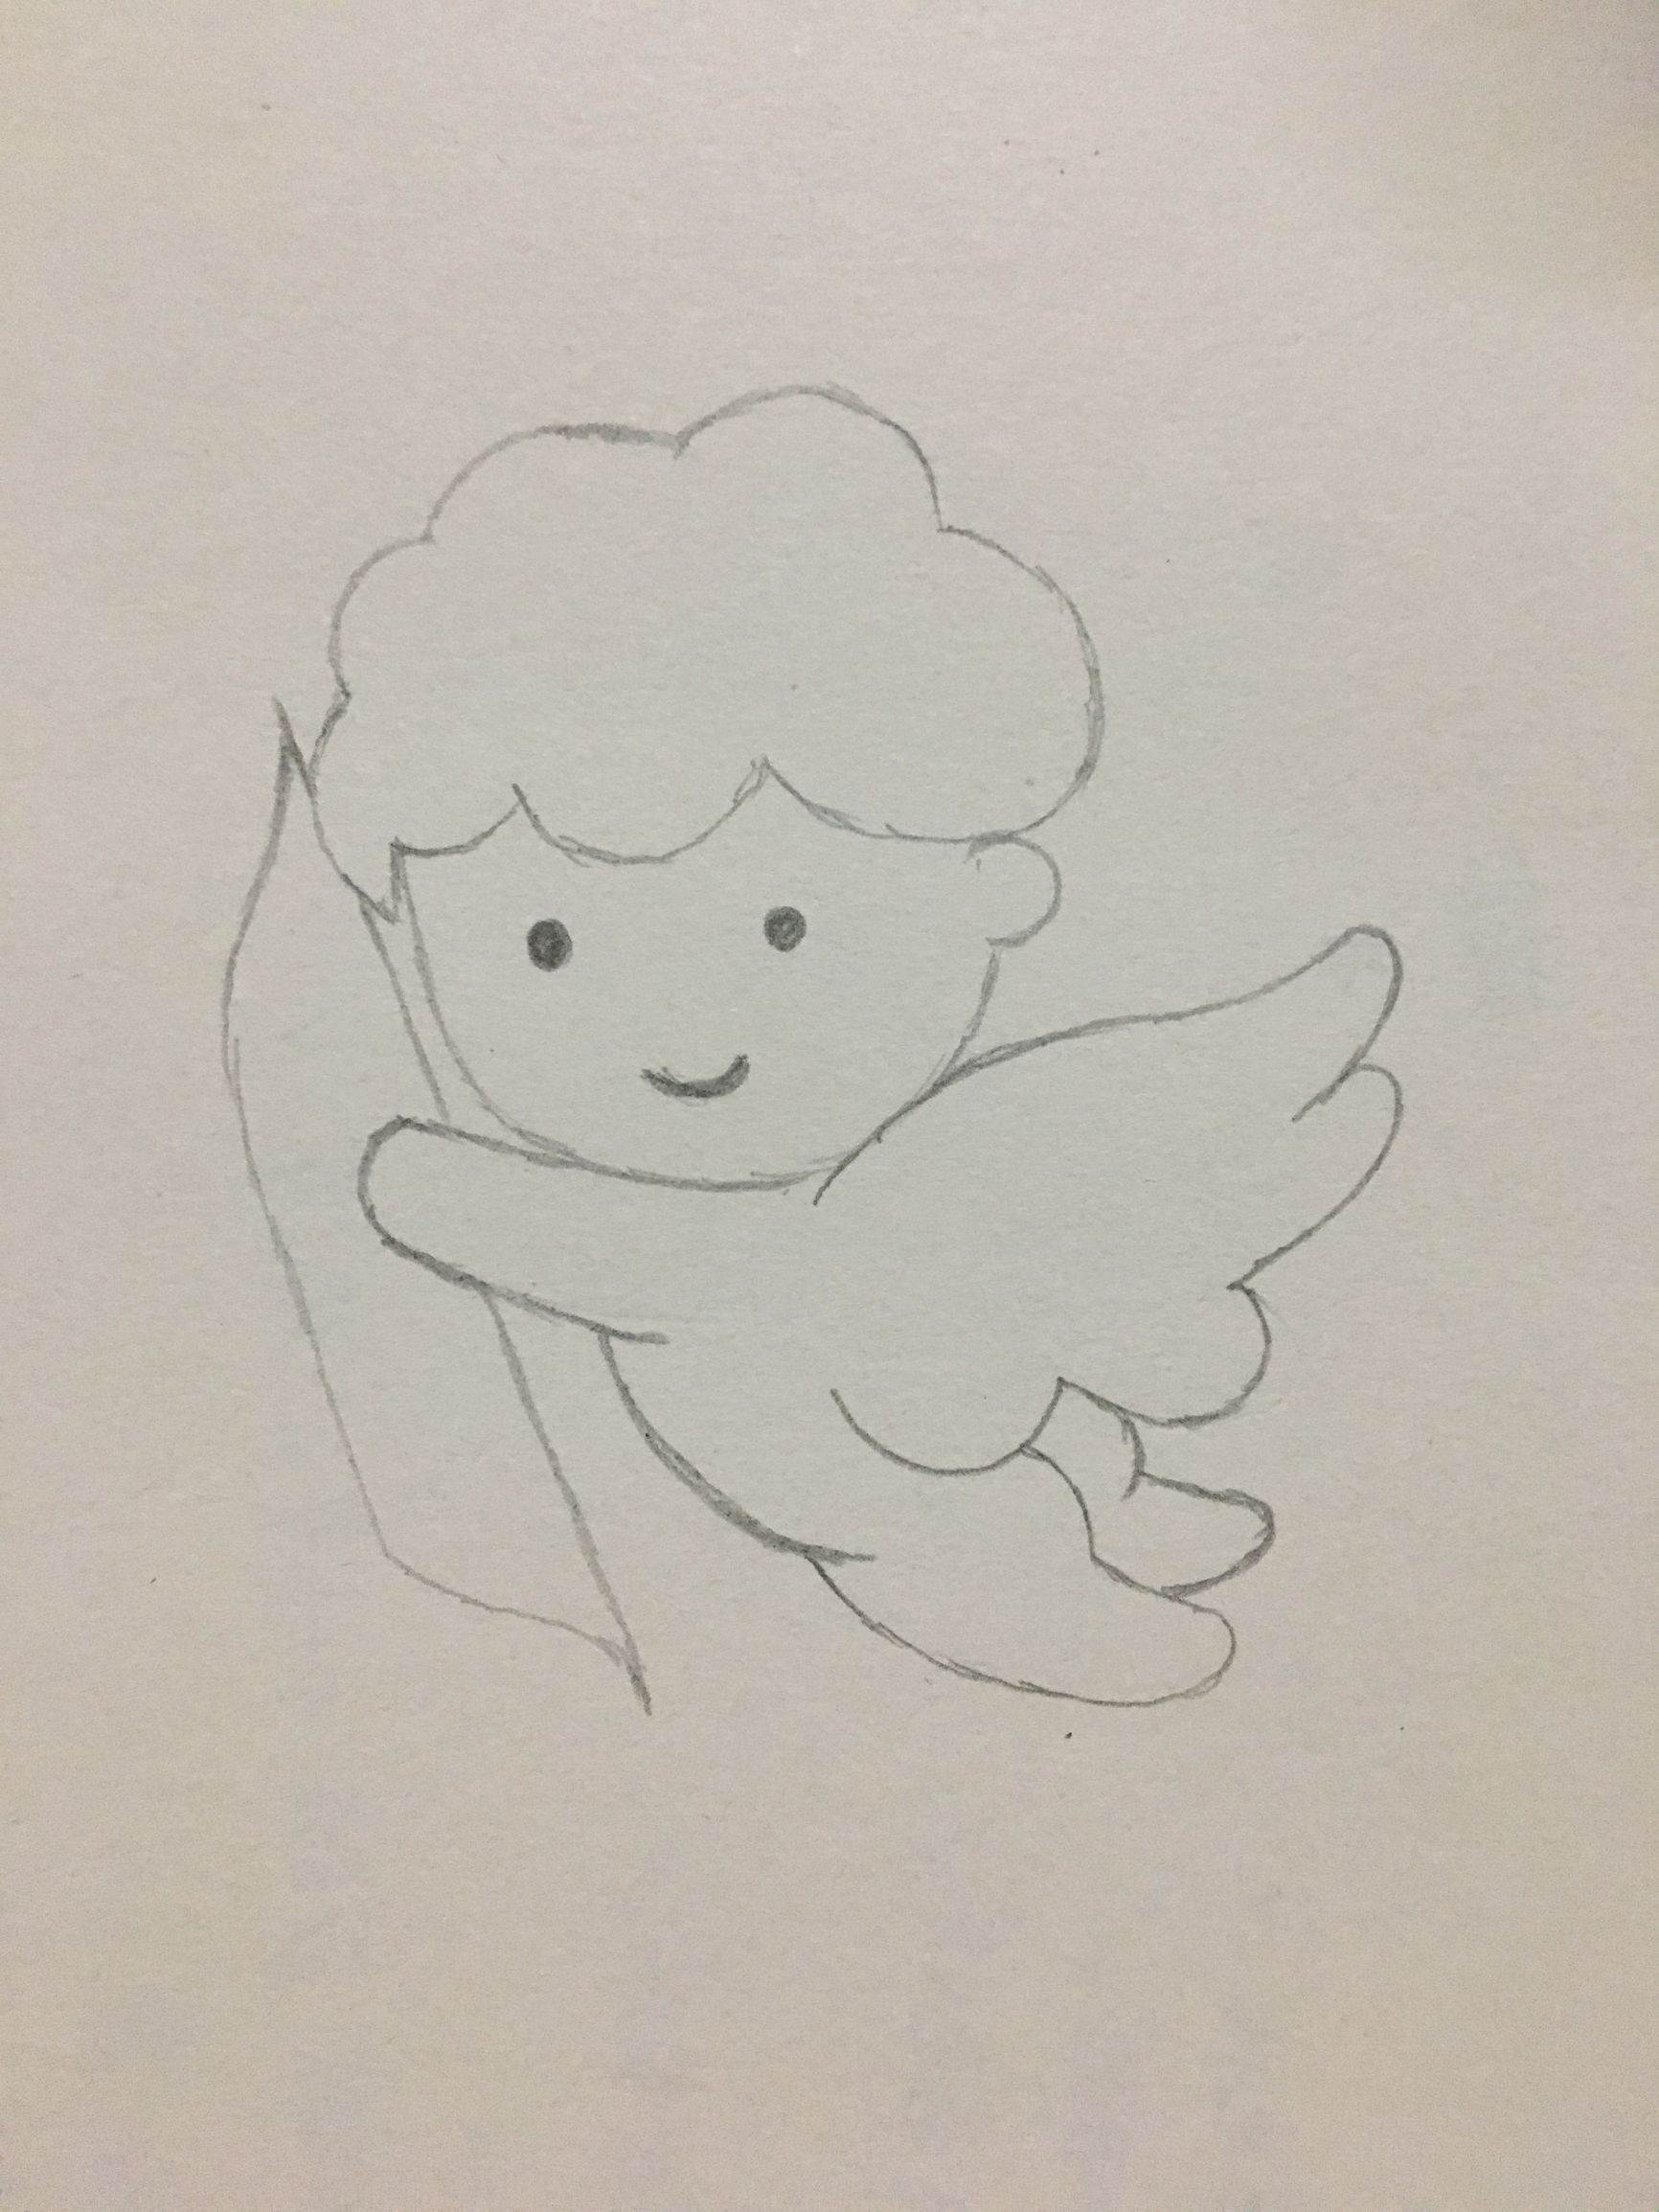 小天使怎么画简笔可爱图片